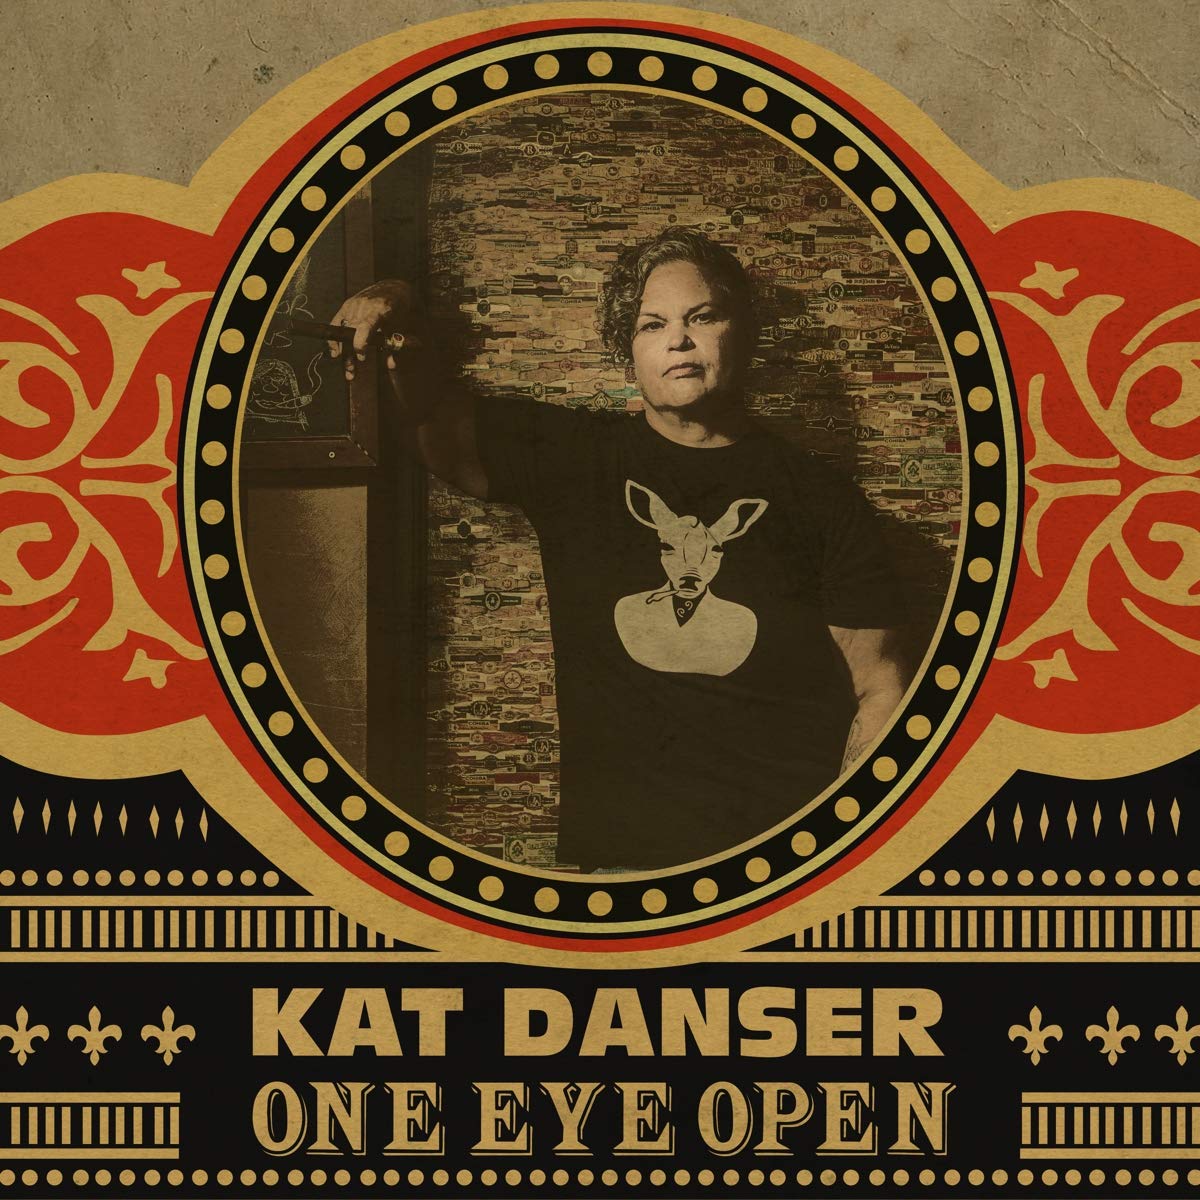 KAT DANSER - One Eye Open